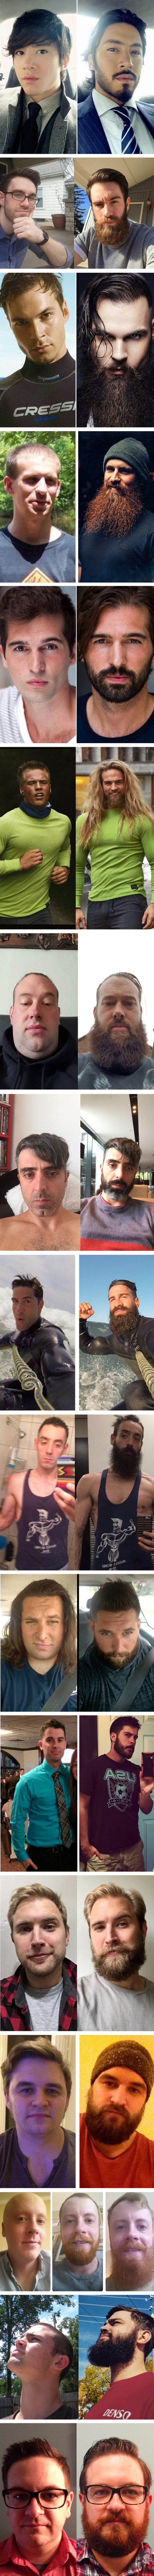 Nove fotografije koje dokazuju da brada potpuno promijeni muškarca